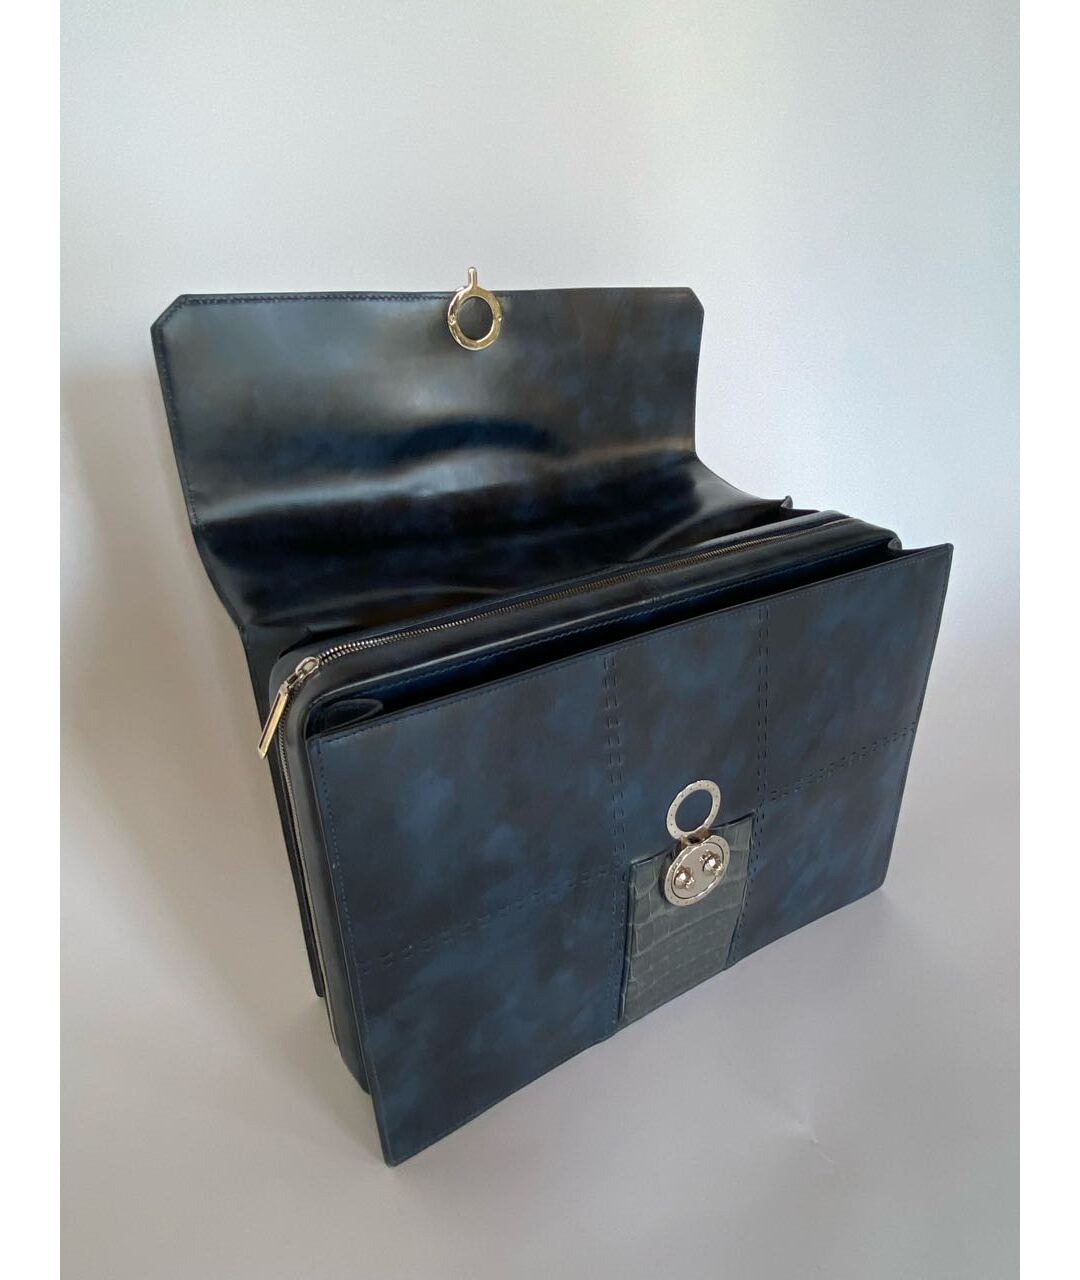 STEFANO RICCI Темно-синий кожаный портфель, фото 2